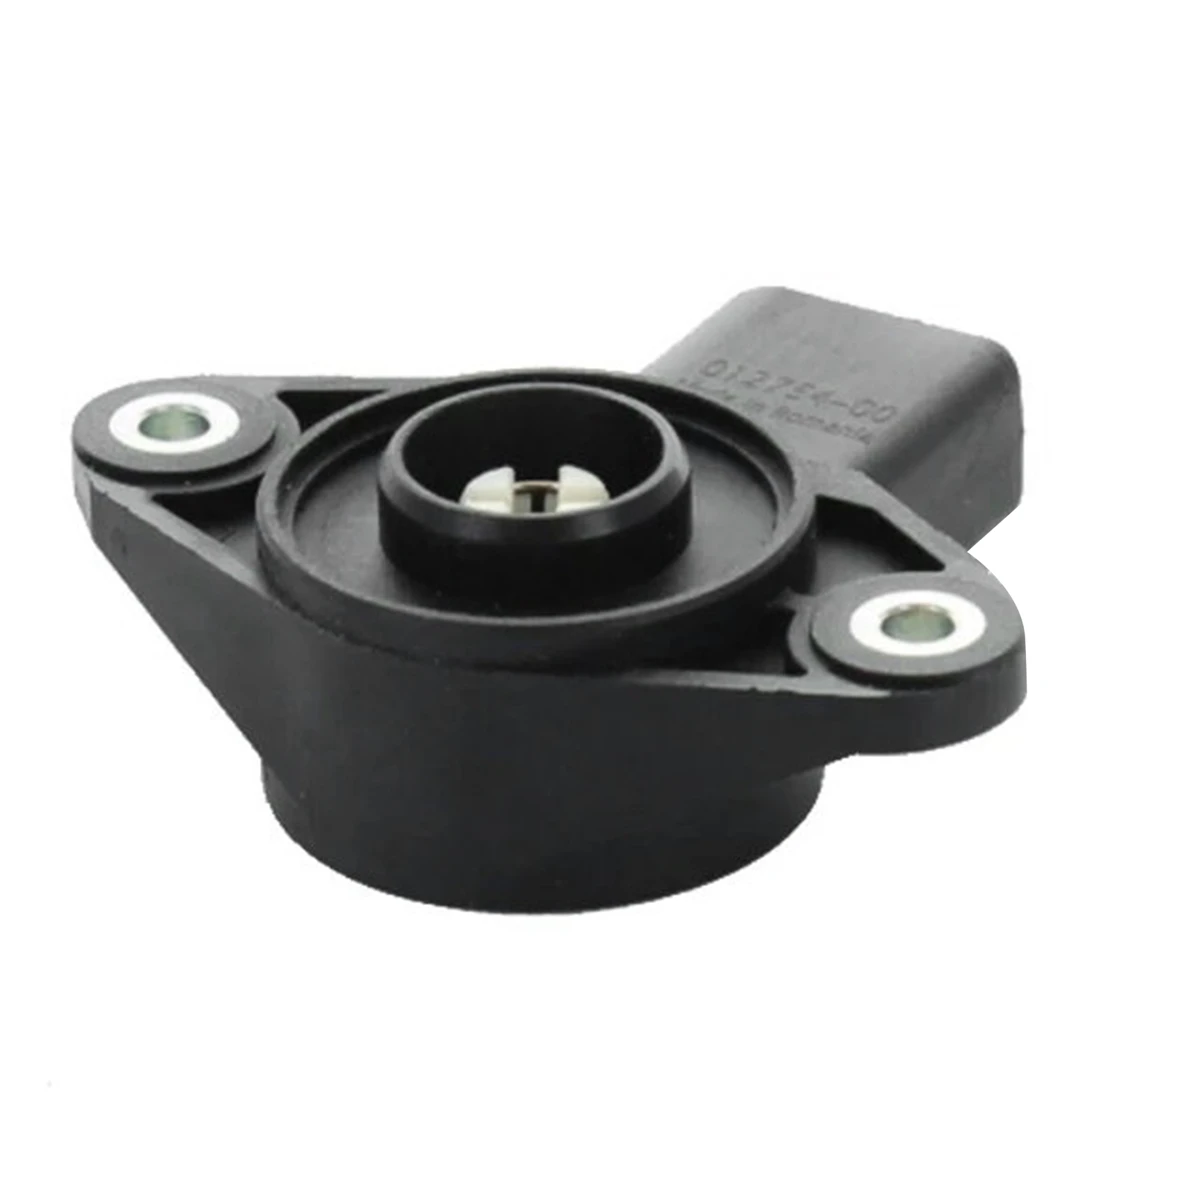 

03C907386E Intake Stub Sensor Potentiometer Intake Sensor Automobile for A6 A7 A8